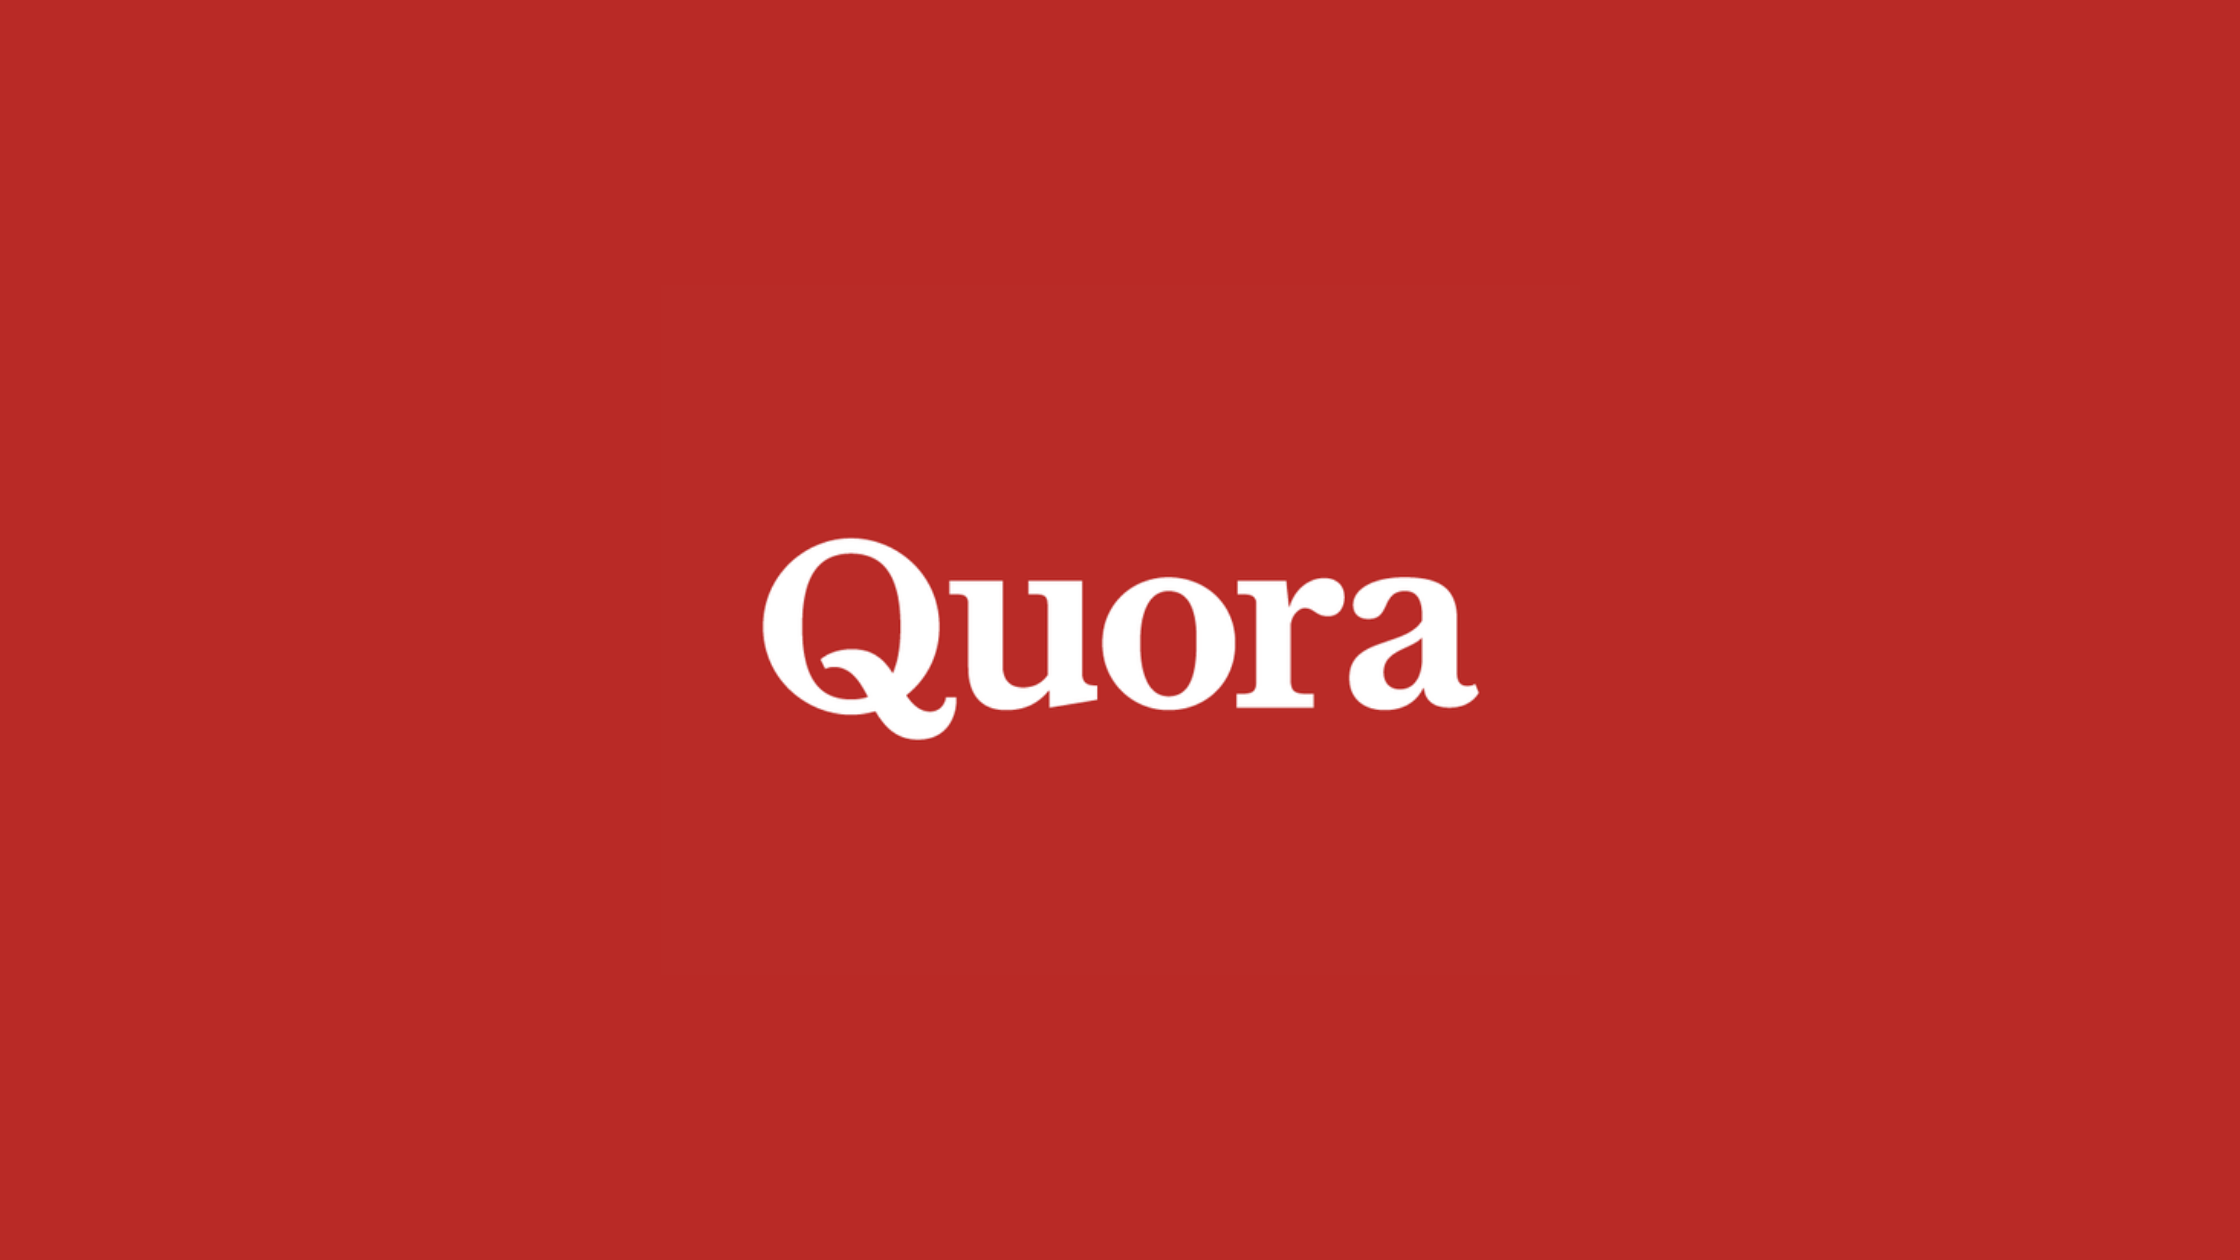 List of Website Like Quora